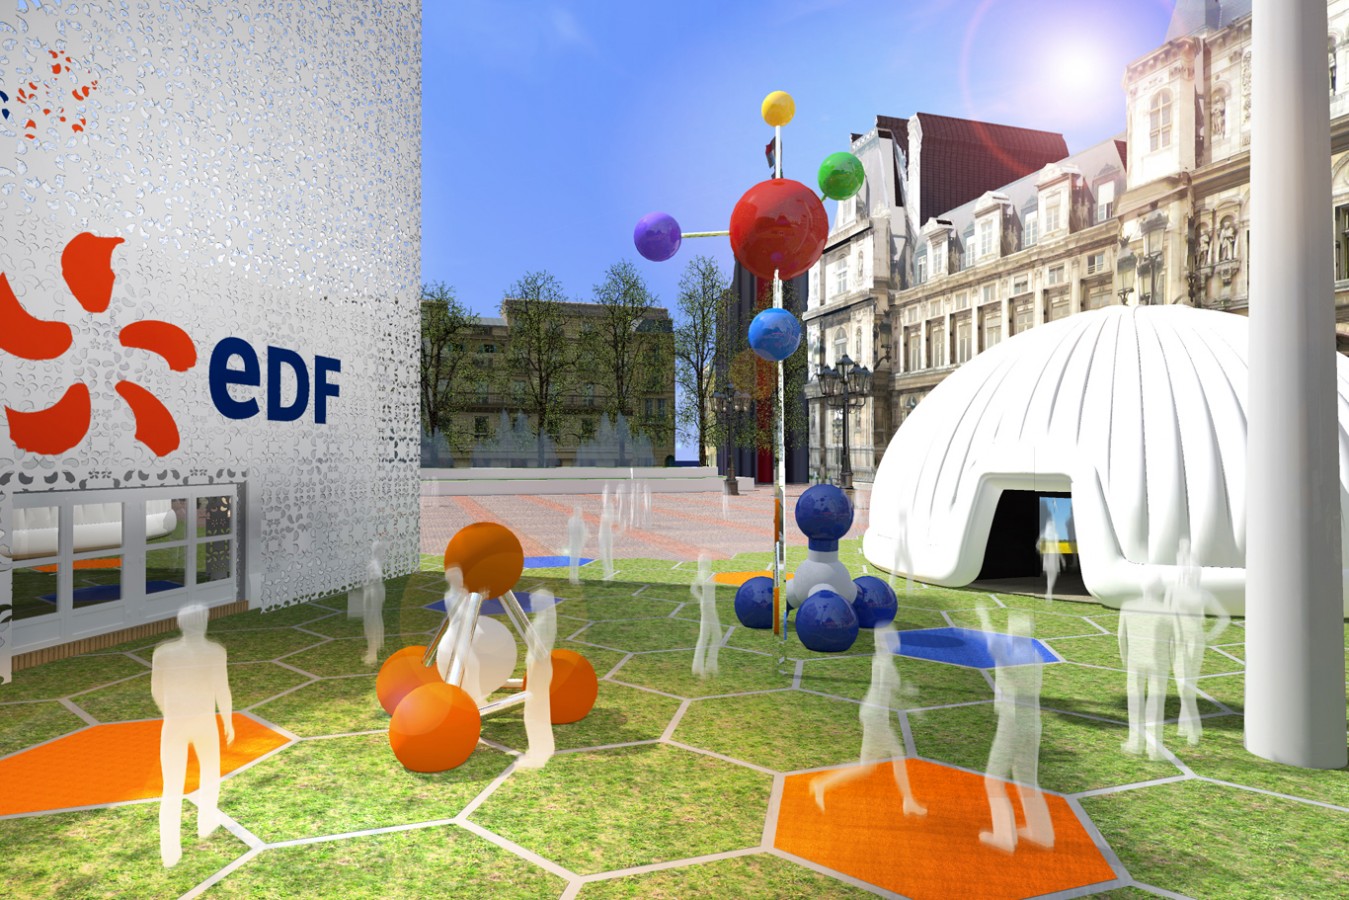 EDF - Electric Cité - 2014